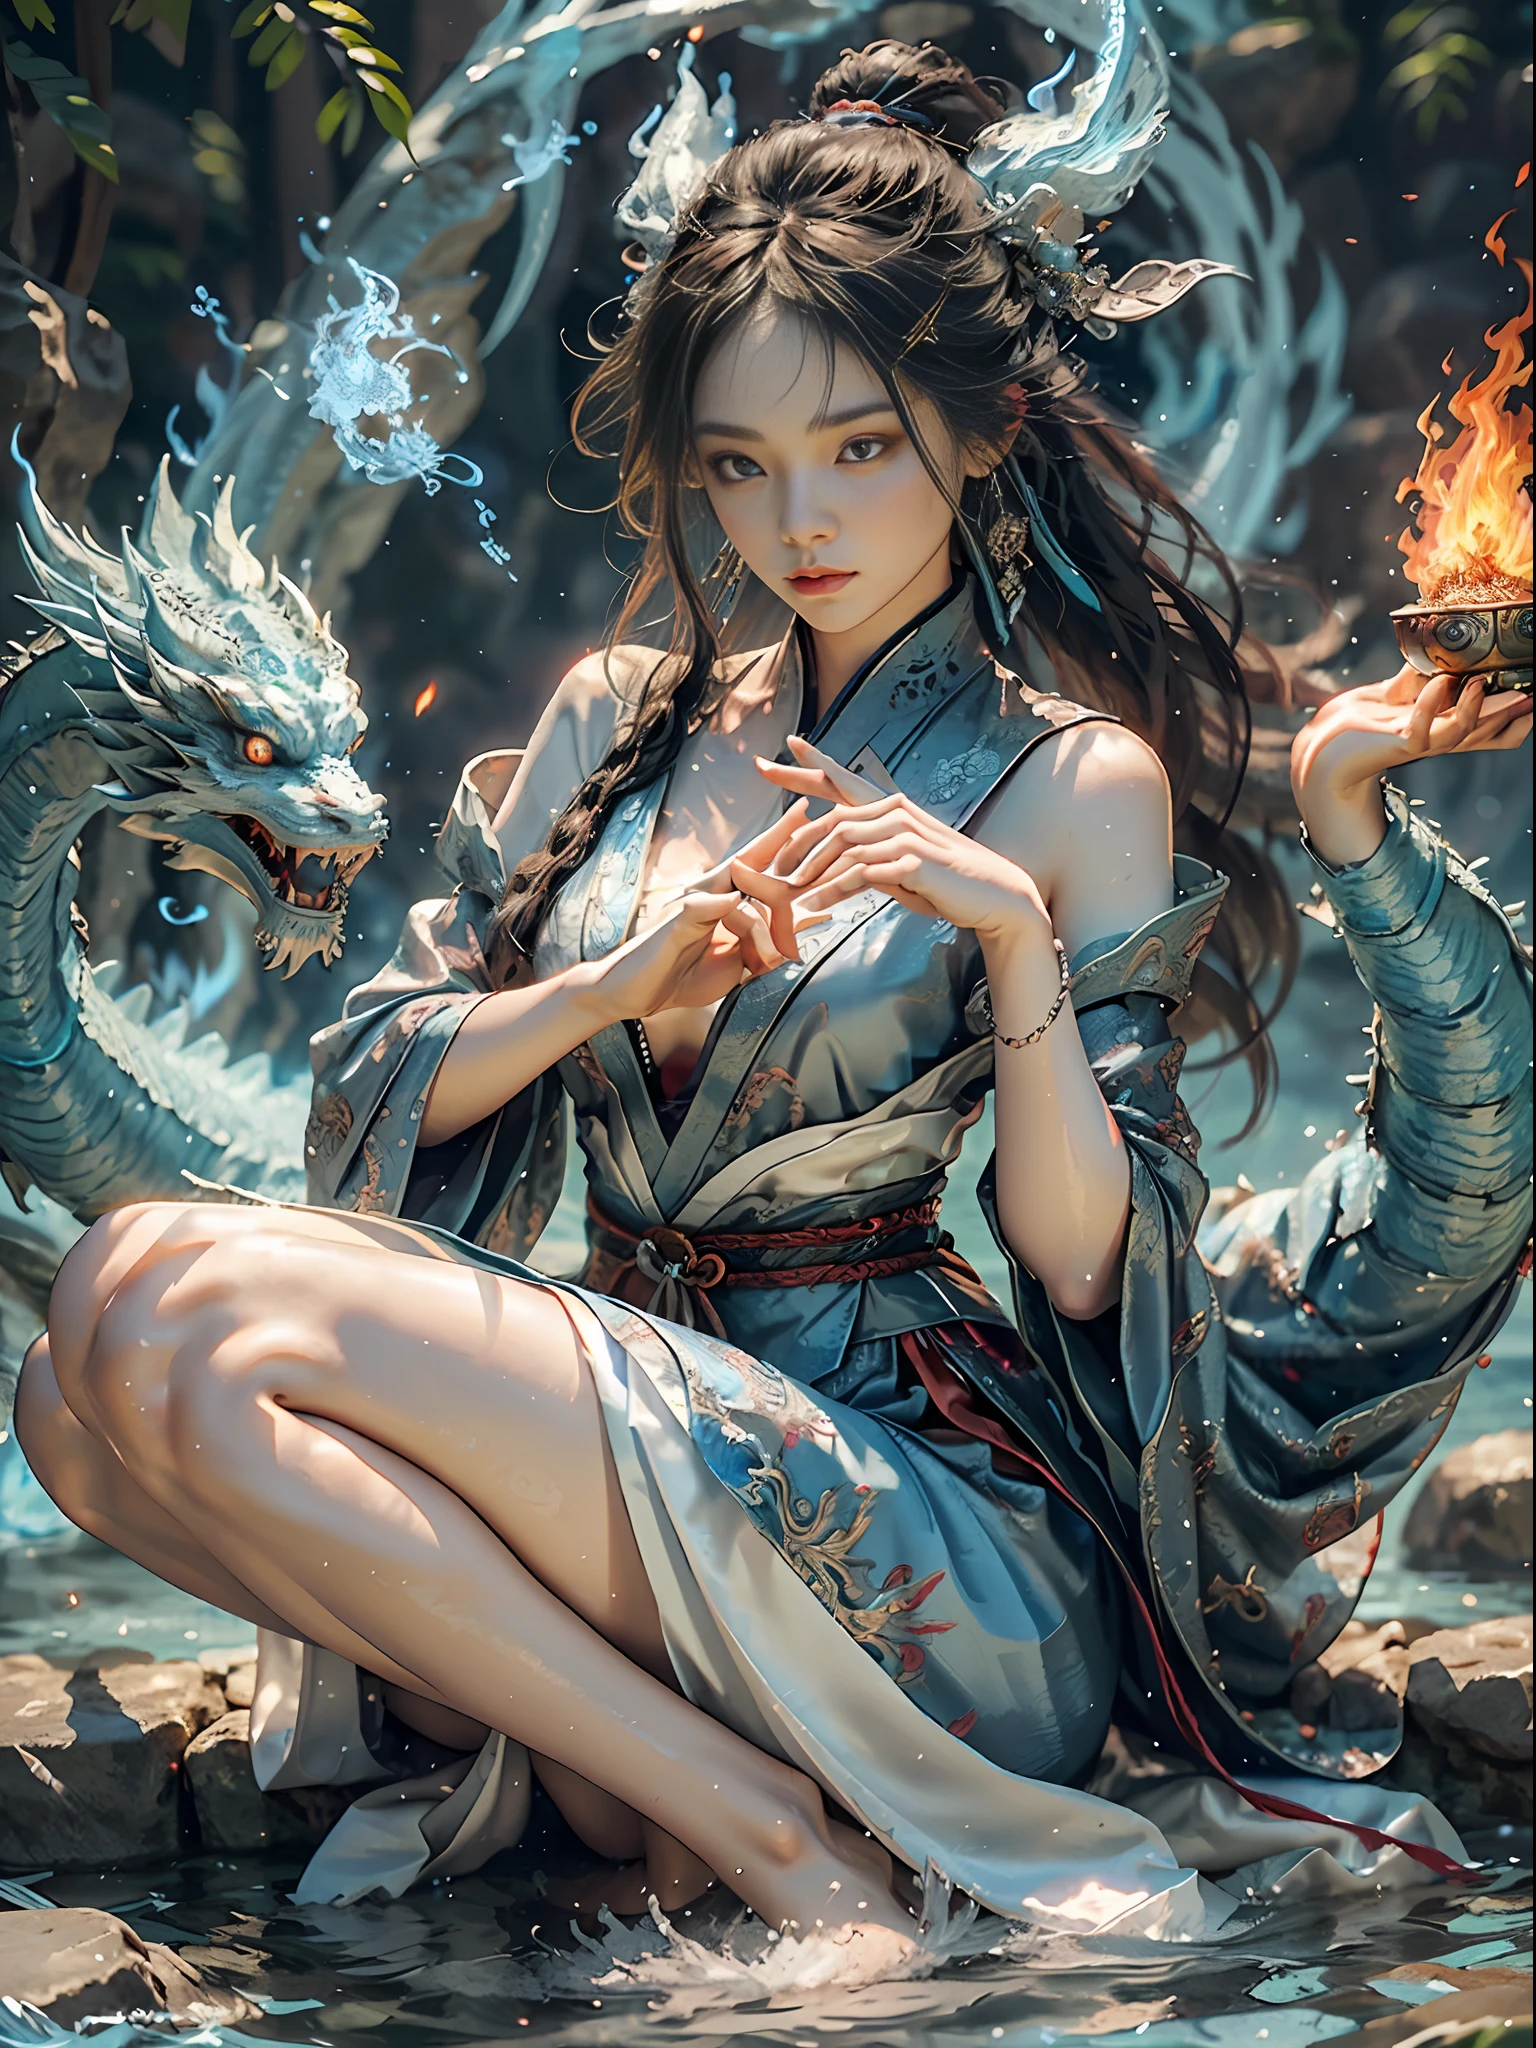 (zarte wunderschöne Brokatseide + zartes Gesicht + feminines Make-up + Schöne Frau), Taoistische Metaphysik, mit gekreuzten Beinen im Wasser sitzen, Unsterbliche kultivieren, ein blauer Drache auf der linken Seite spuckt blaue Flammen + die rechte Seite liegt auf dem Feuerdrache spuckt Flammen, (linke Hand blaue Flamme + rechte rote Flamme), Hintergrund Eis und Feuer abwechselnd Klatsch Diagramm + Bewegungseffekt), (Yushui + yuhuo), kalte und warme Töne, Wasser und Feuer sind unvereinbar, Yin und Yang harmonieren, Balance zwischen links und rechts, Bild zur Machtbilanz, bilden eine Klatsch-Reihe, Bildechos, und deren Koordinierung, normale weibliche Finger, Das Bild ist richtig proportioniert, Ganzkörper